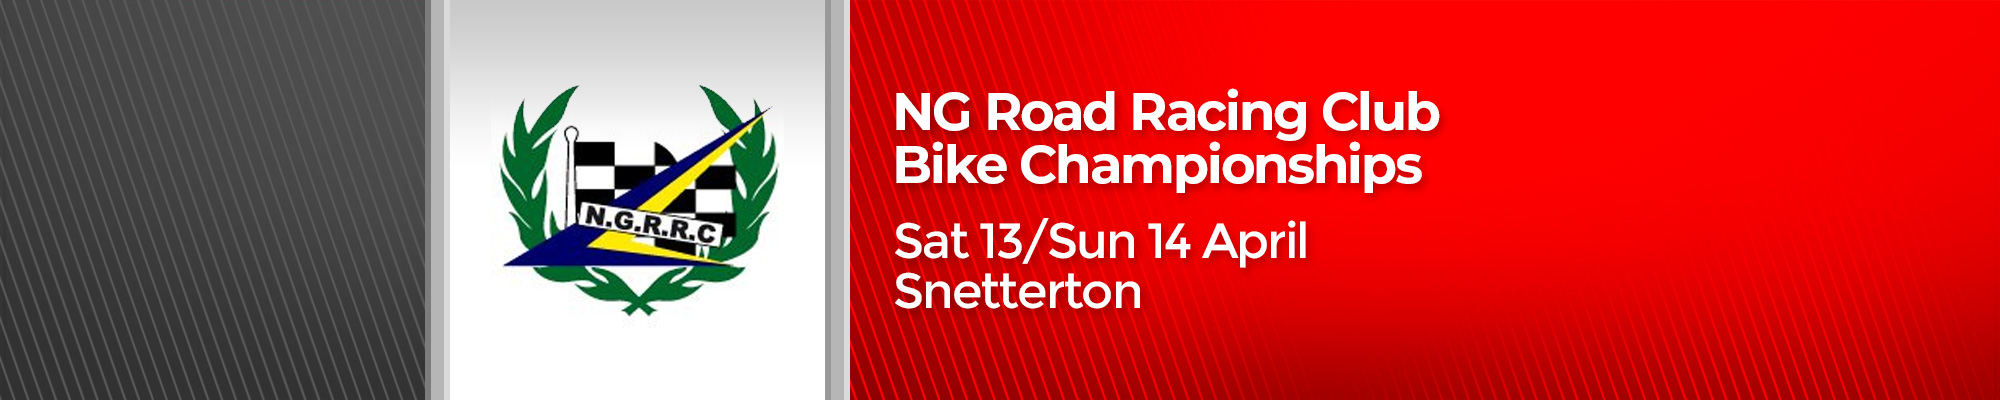 NG Road Racing Bike Club Championships